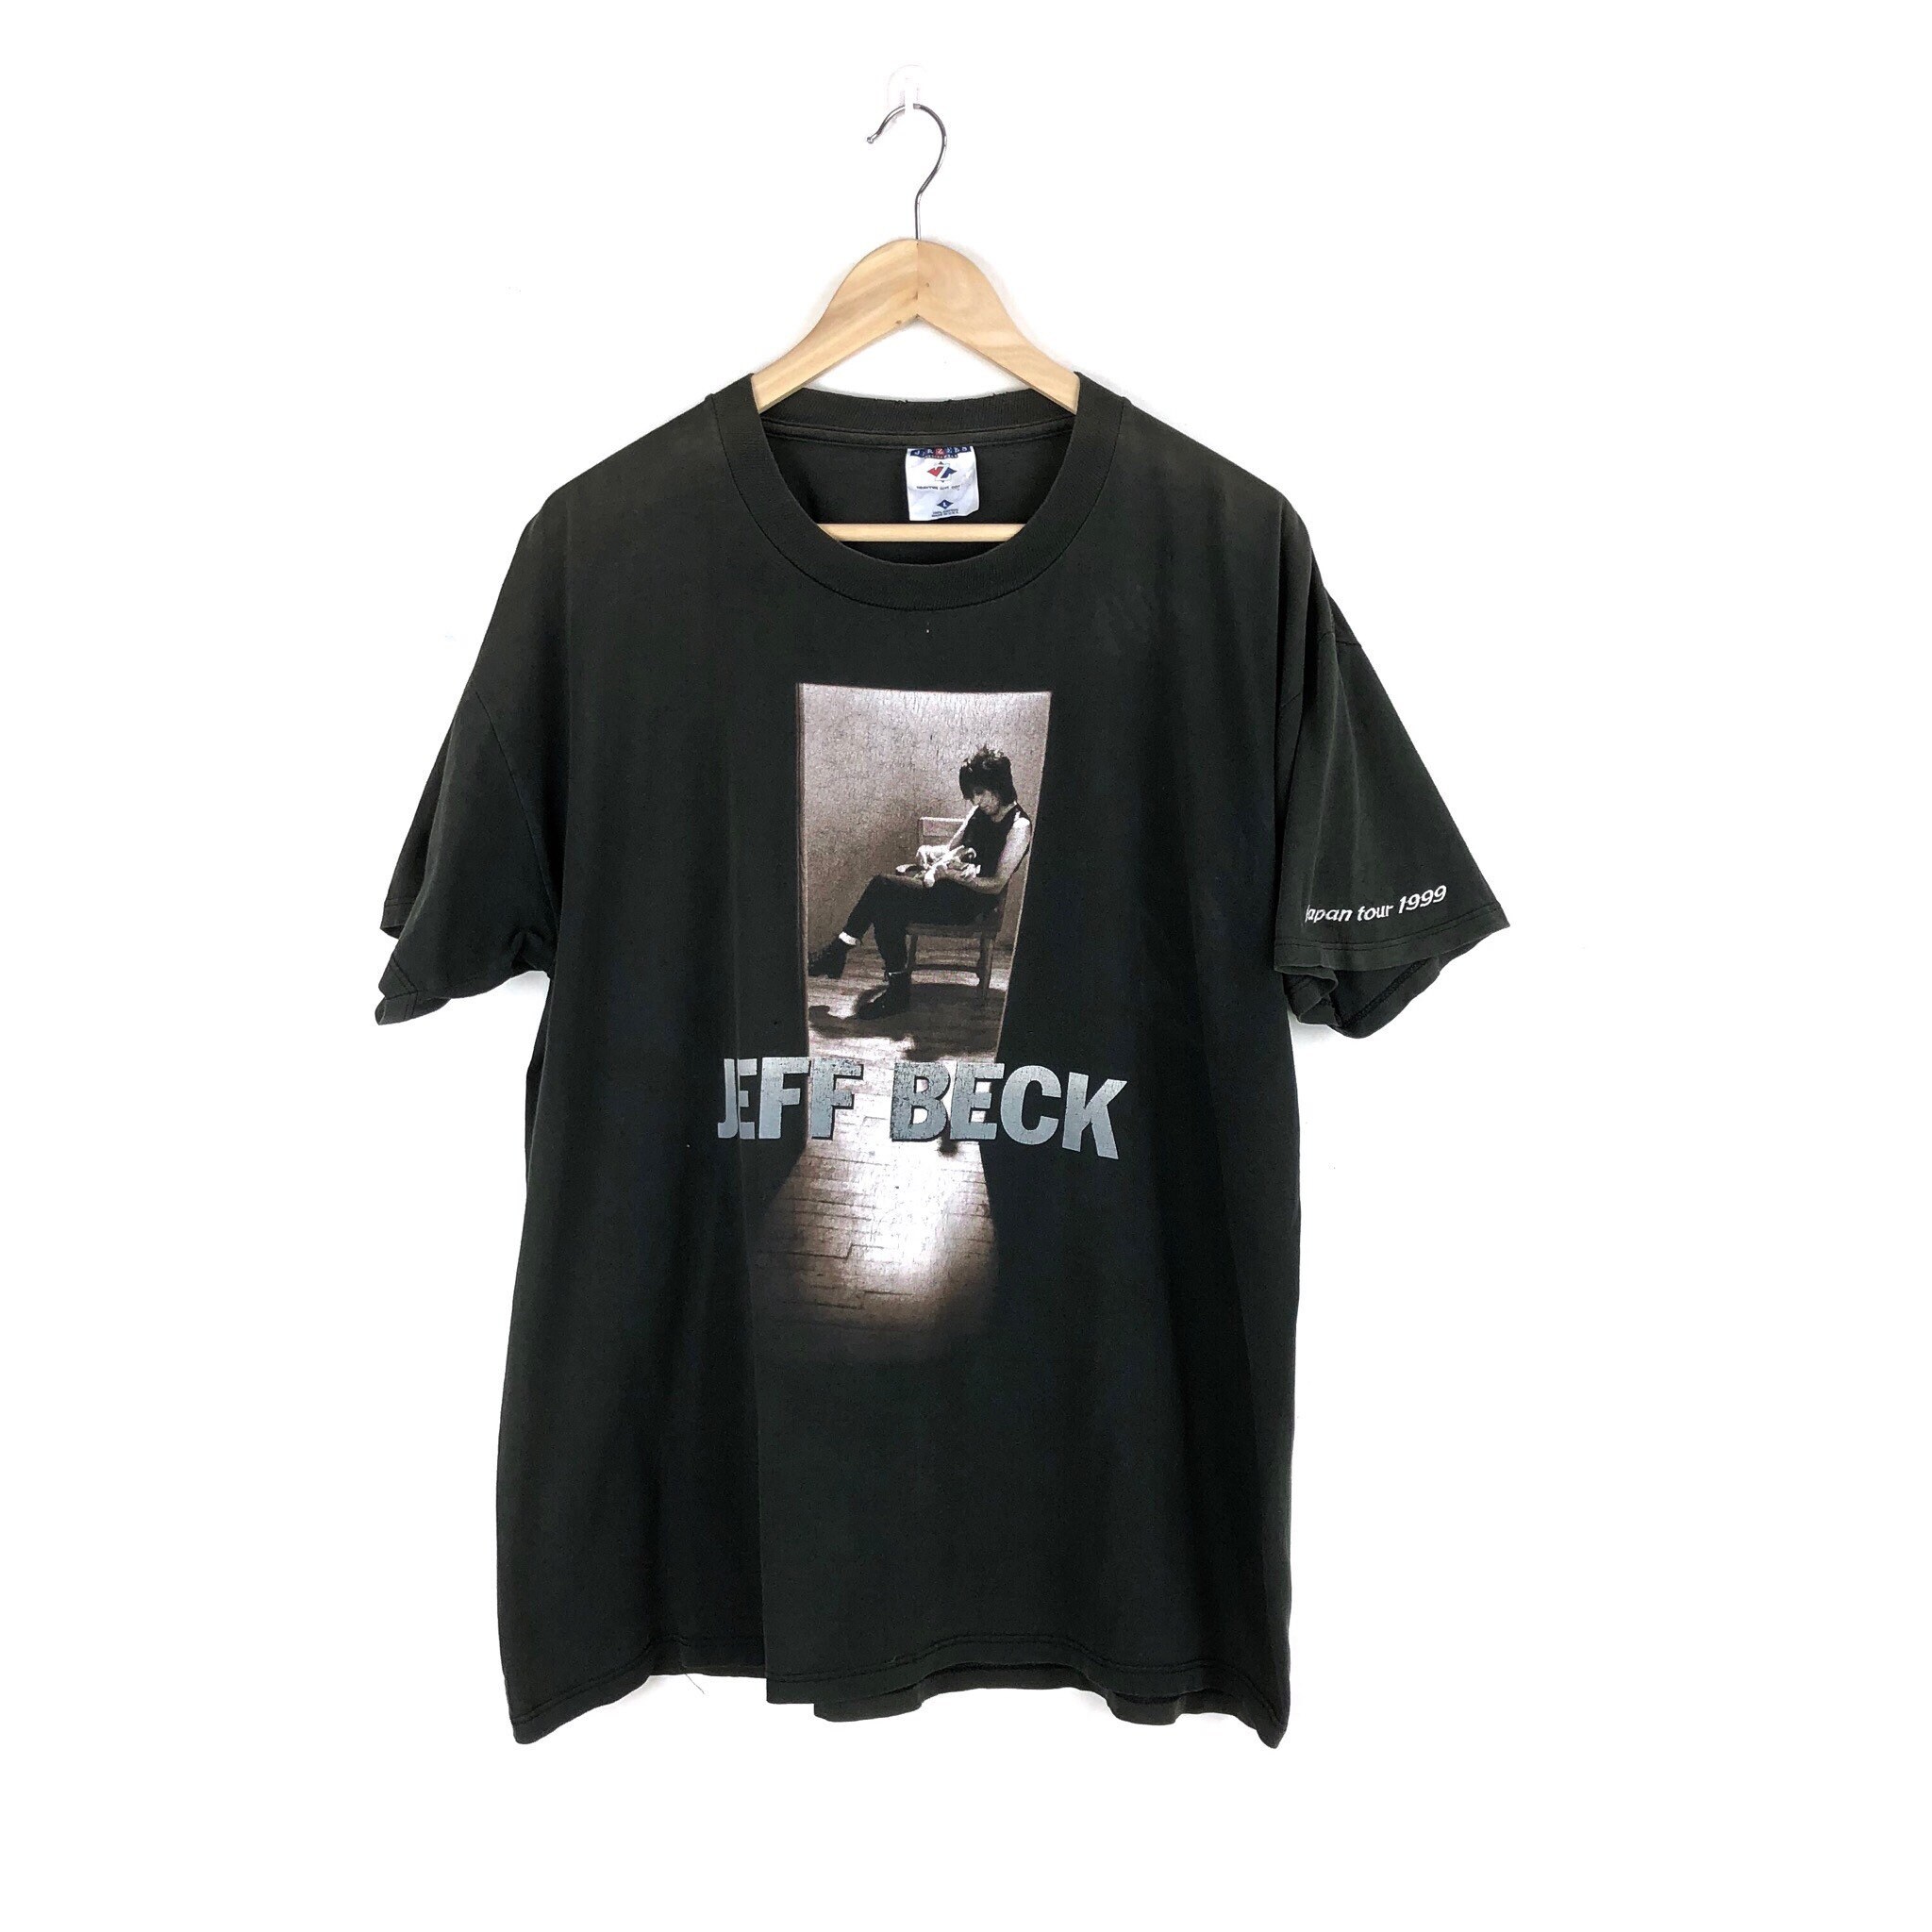 Vintage Jeff Beck Shirt / Who Else / 1999 Japan Tour Beck | Etsy